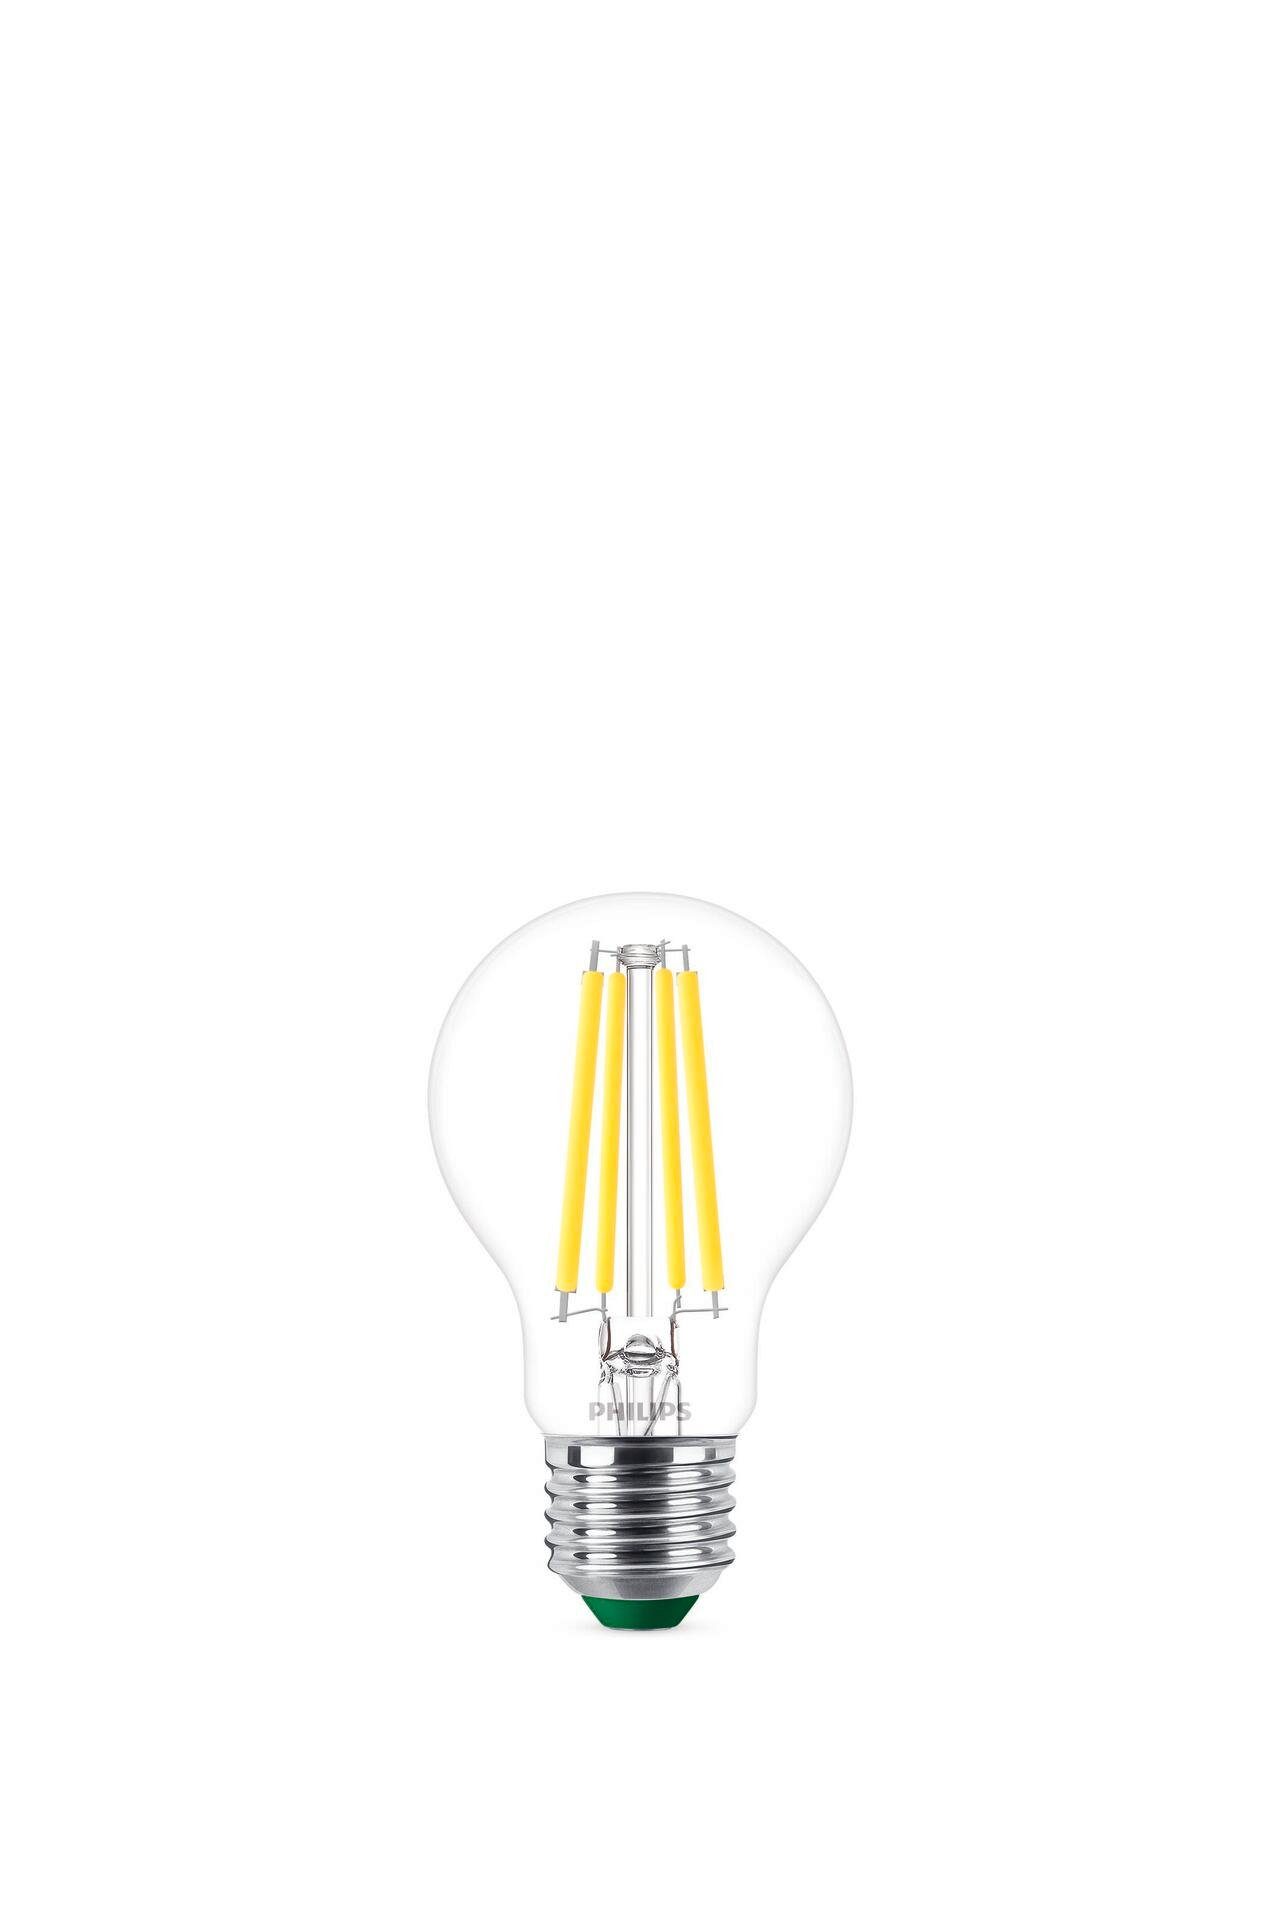 Philips Smarte LED-Leuchte LED-Lampe, LED fest integriert